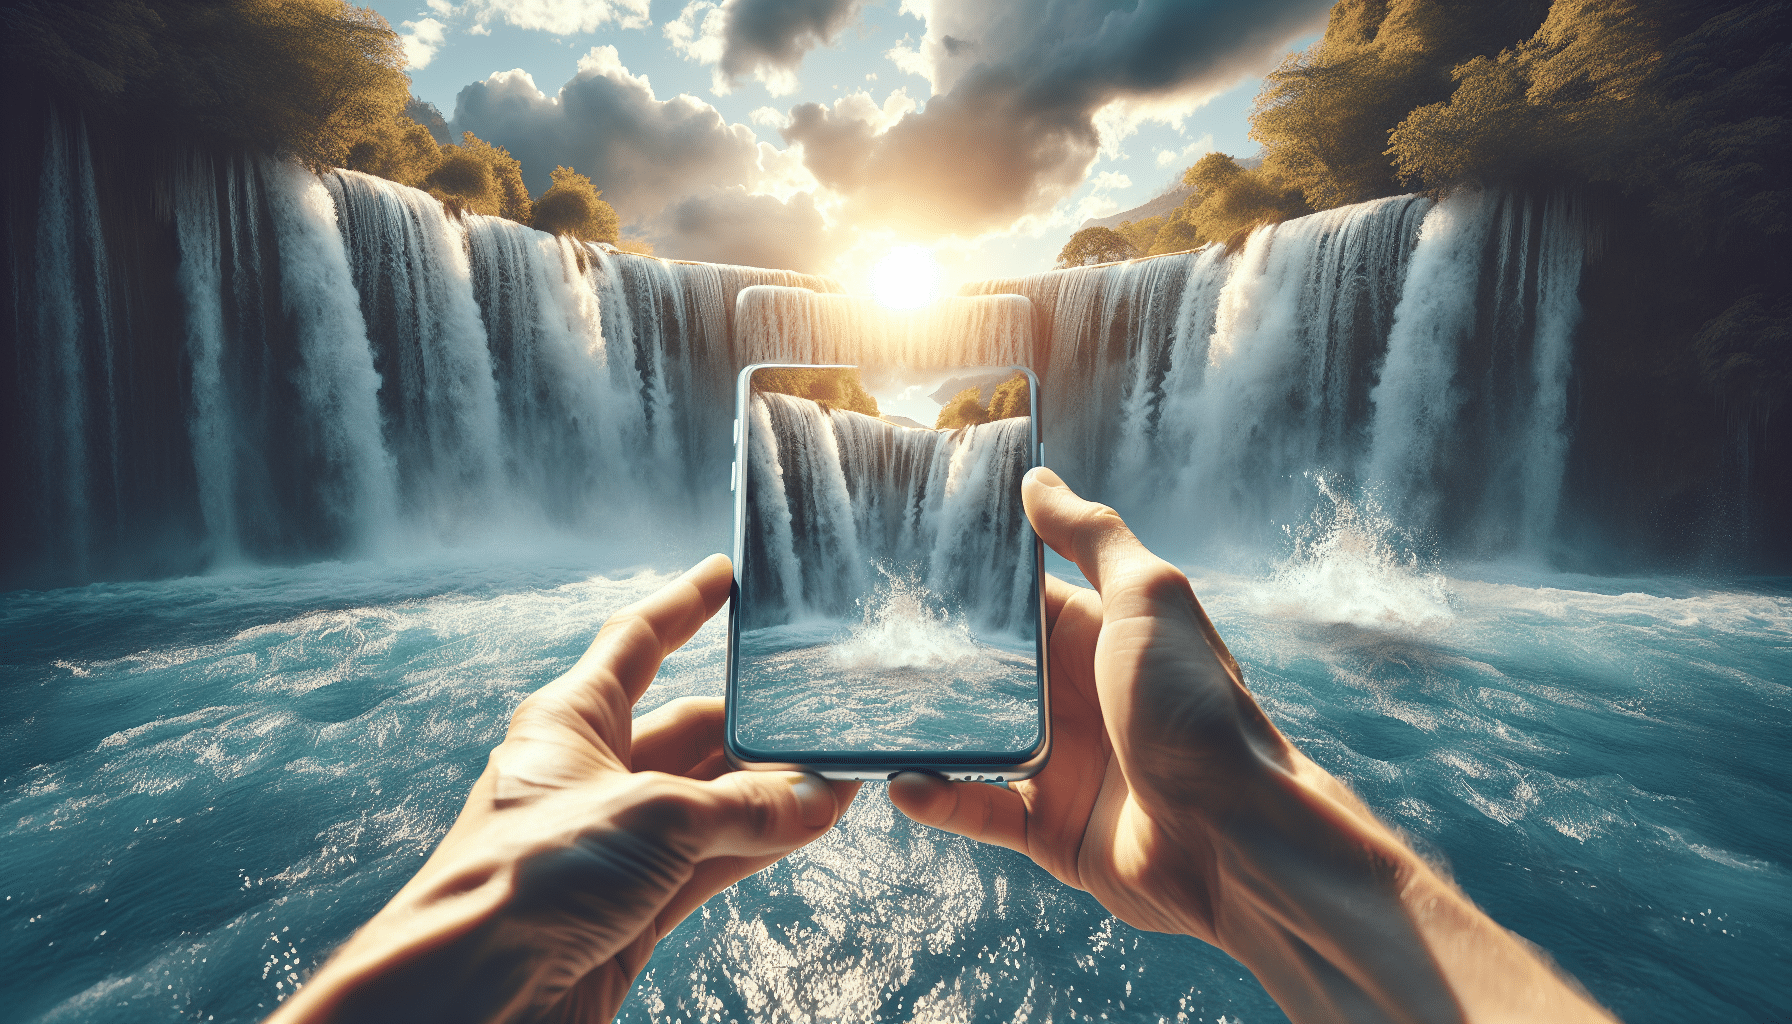 découvrez que faire si vous rêvez de faire tomber votre téléphone dans l'eau. astuces et conseils pour gérer ce rêve.